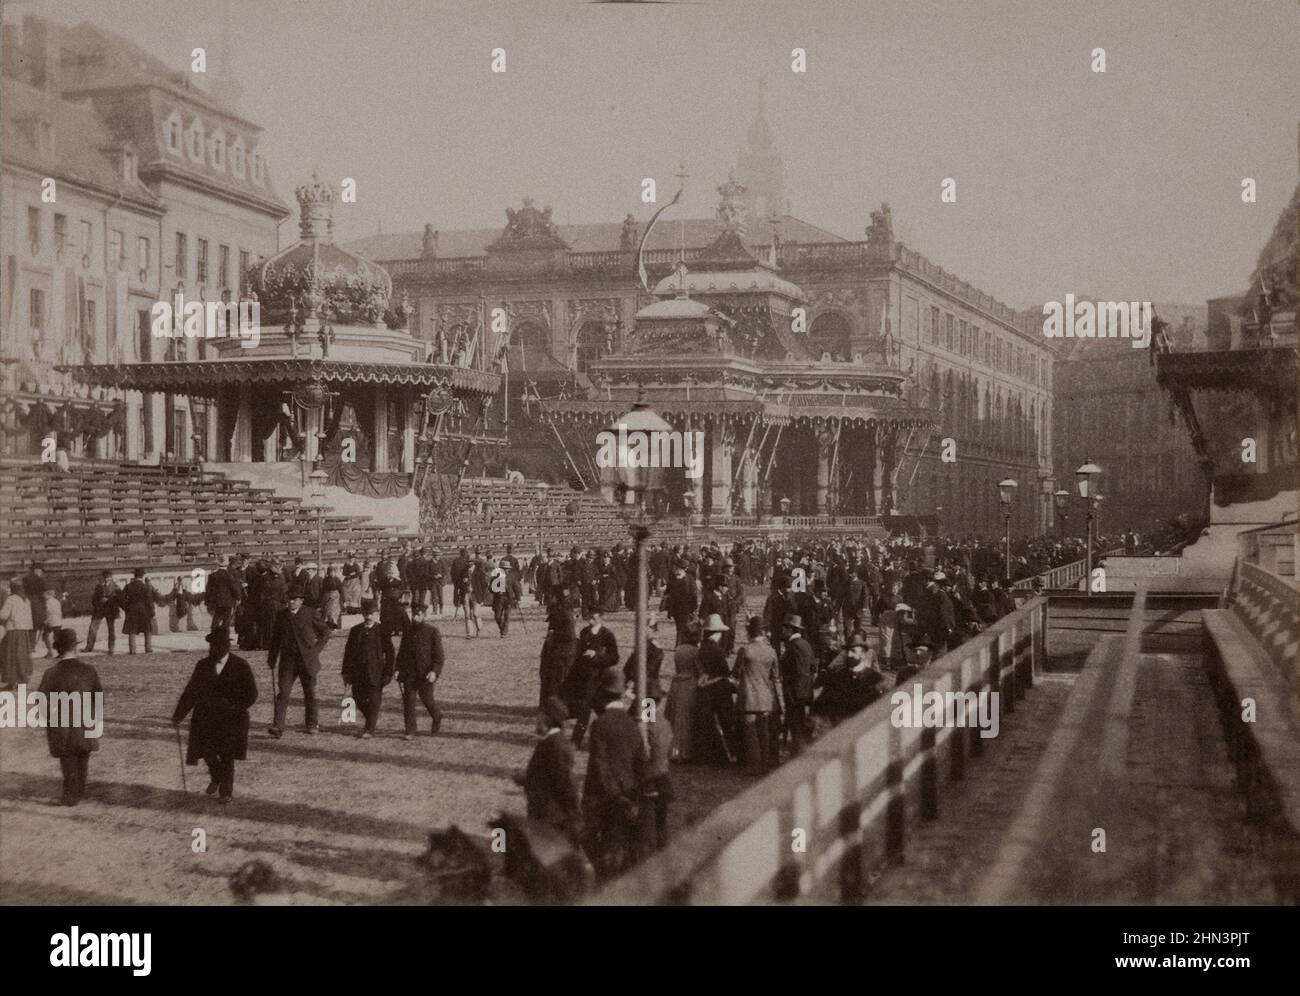 Archivfoto der Wettin-Feier in Dresden vom 17th. Bis 19th. Juni 1889. Fotoplatte zum 800-jährigen Jubiläum des Hauses Wettin unter König A Stockfoto